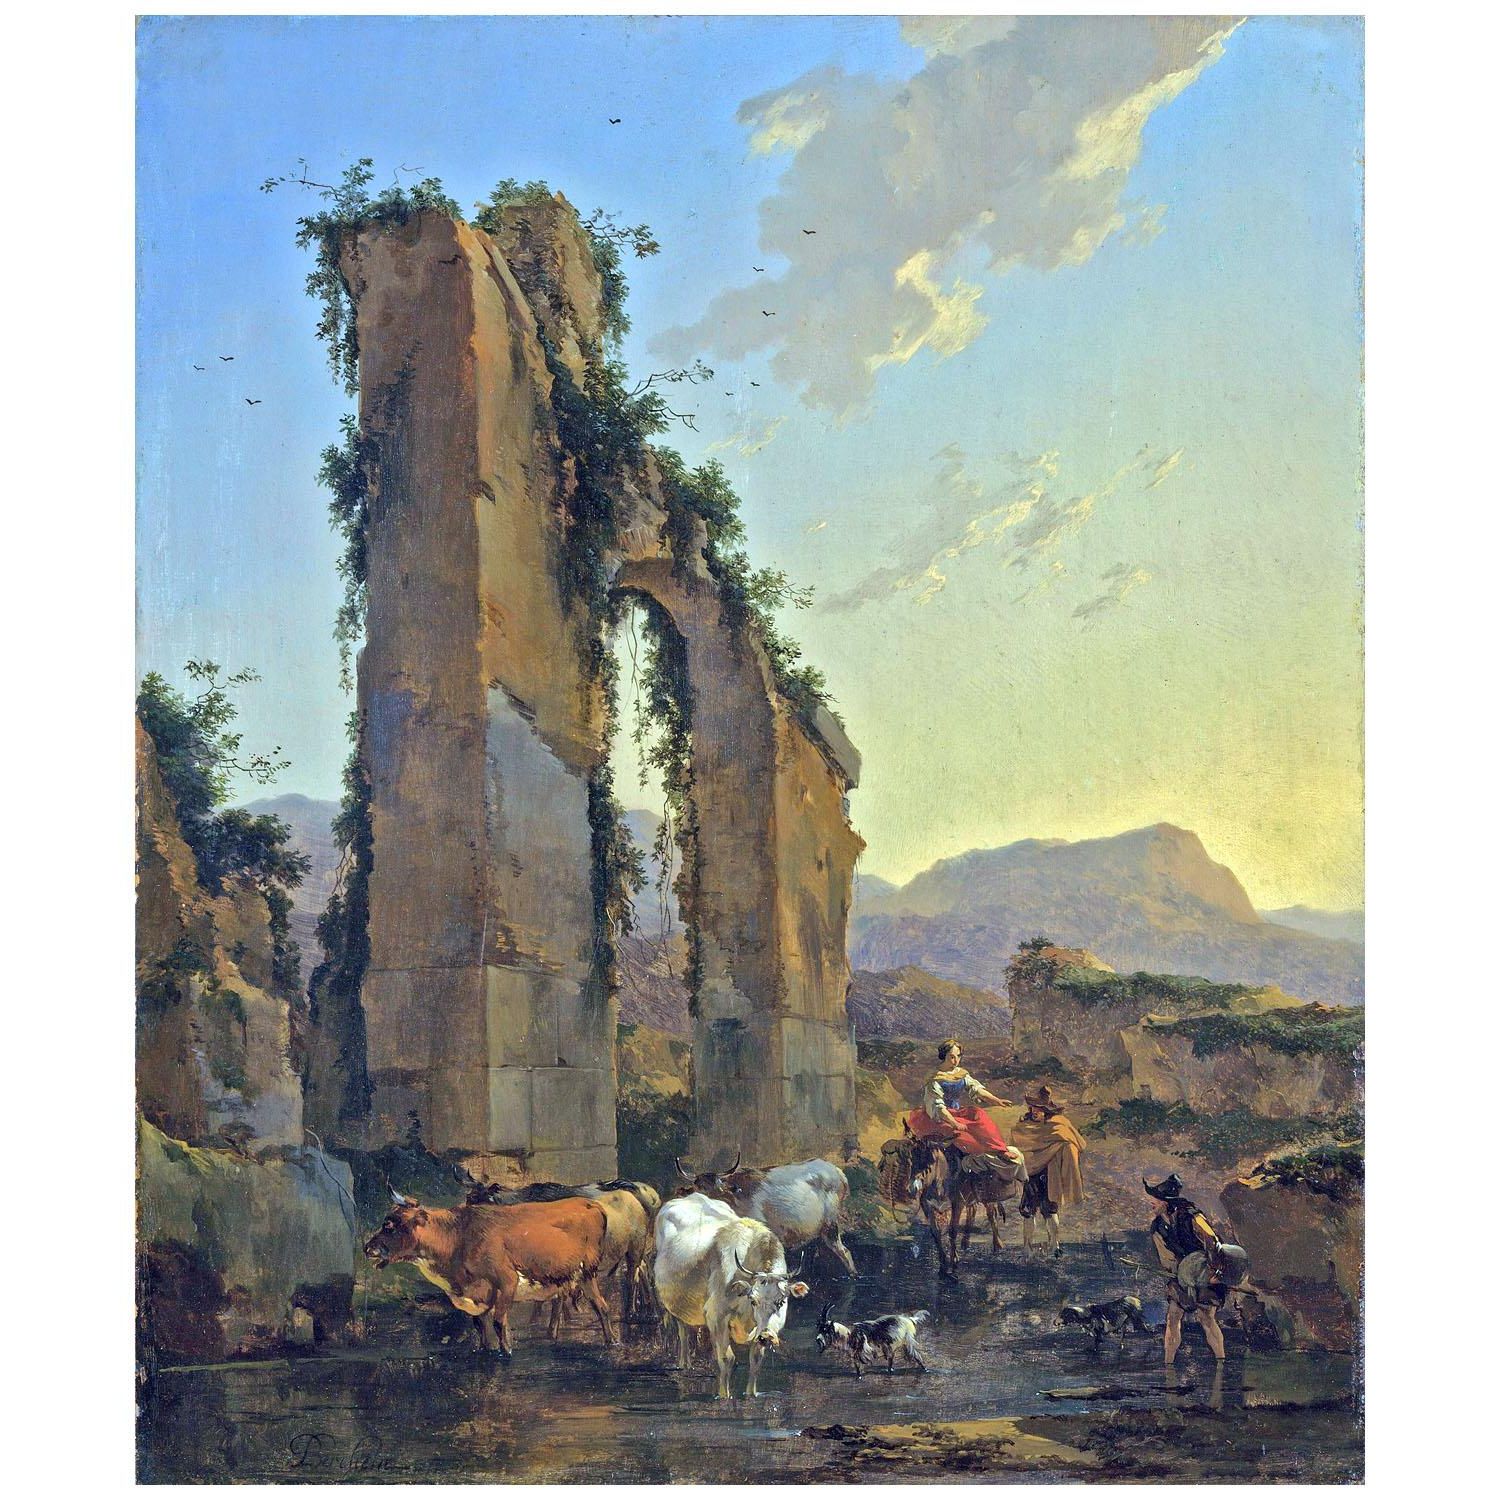 Nicolaes Berchem. Boeren met vee bij een aquaduct. 1658. National Gallery London